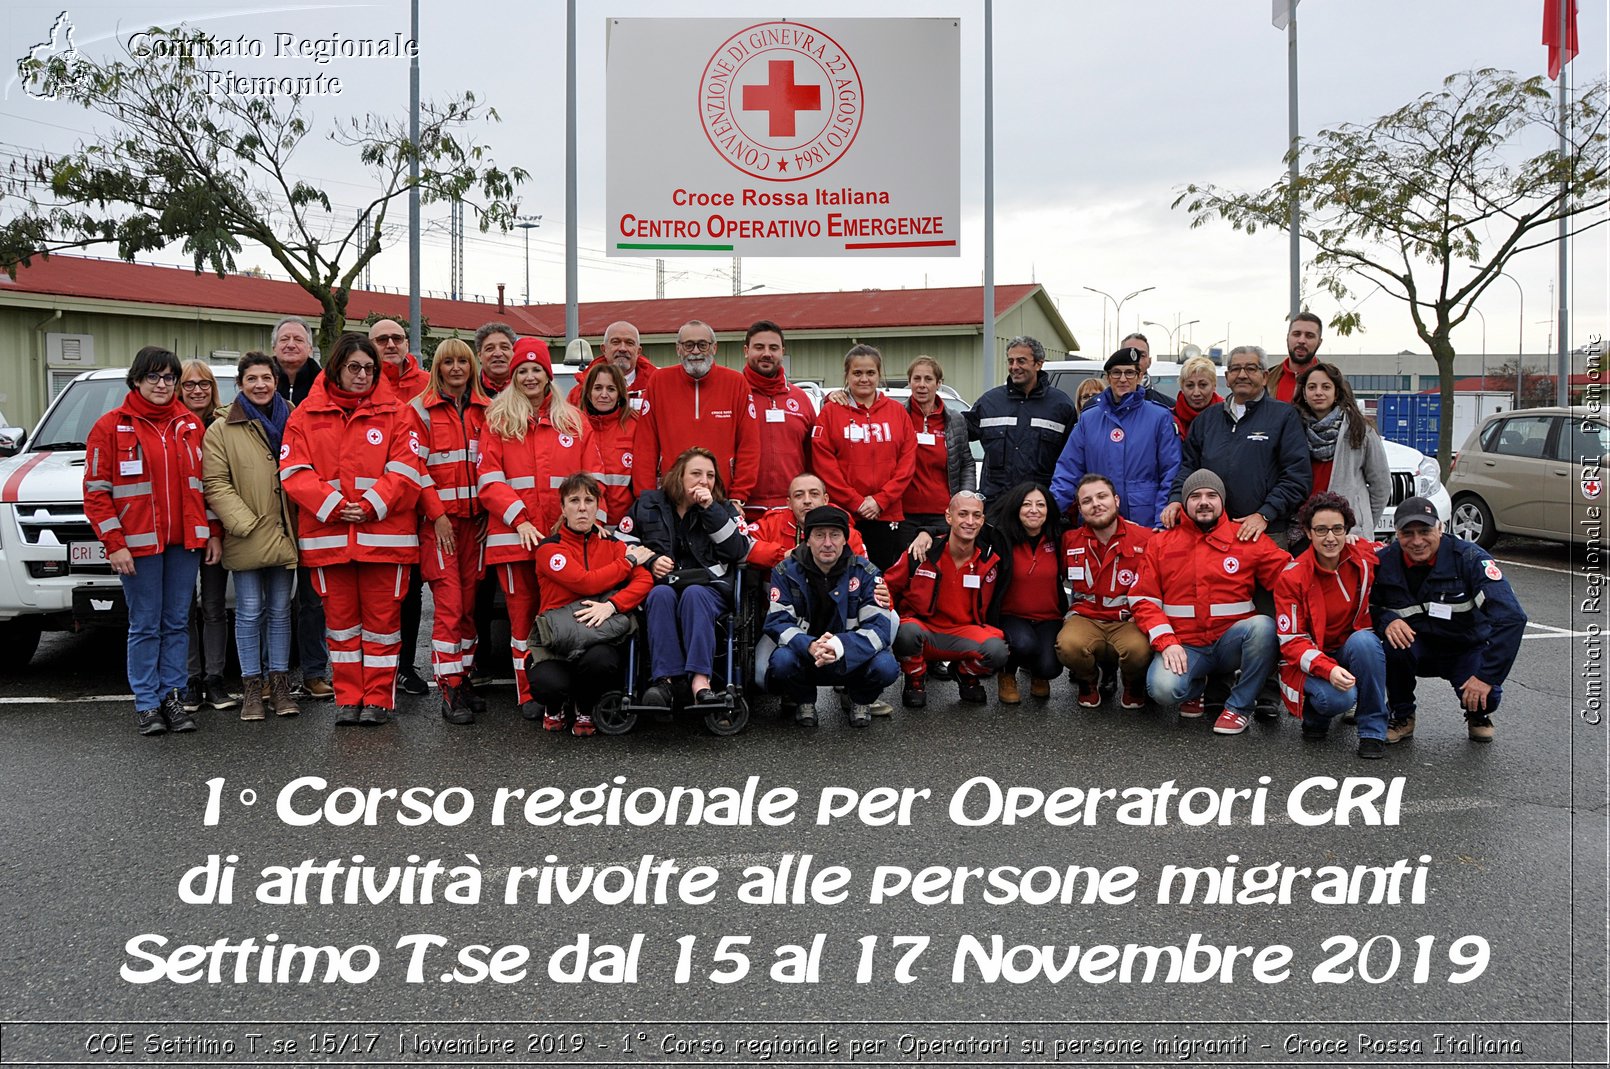 COE Settimo T.se 15/17 Novembre 2019 - 1 Corso regionale per Operatori su persone migranti - Croce Rossa Italiana